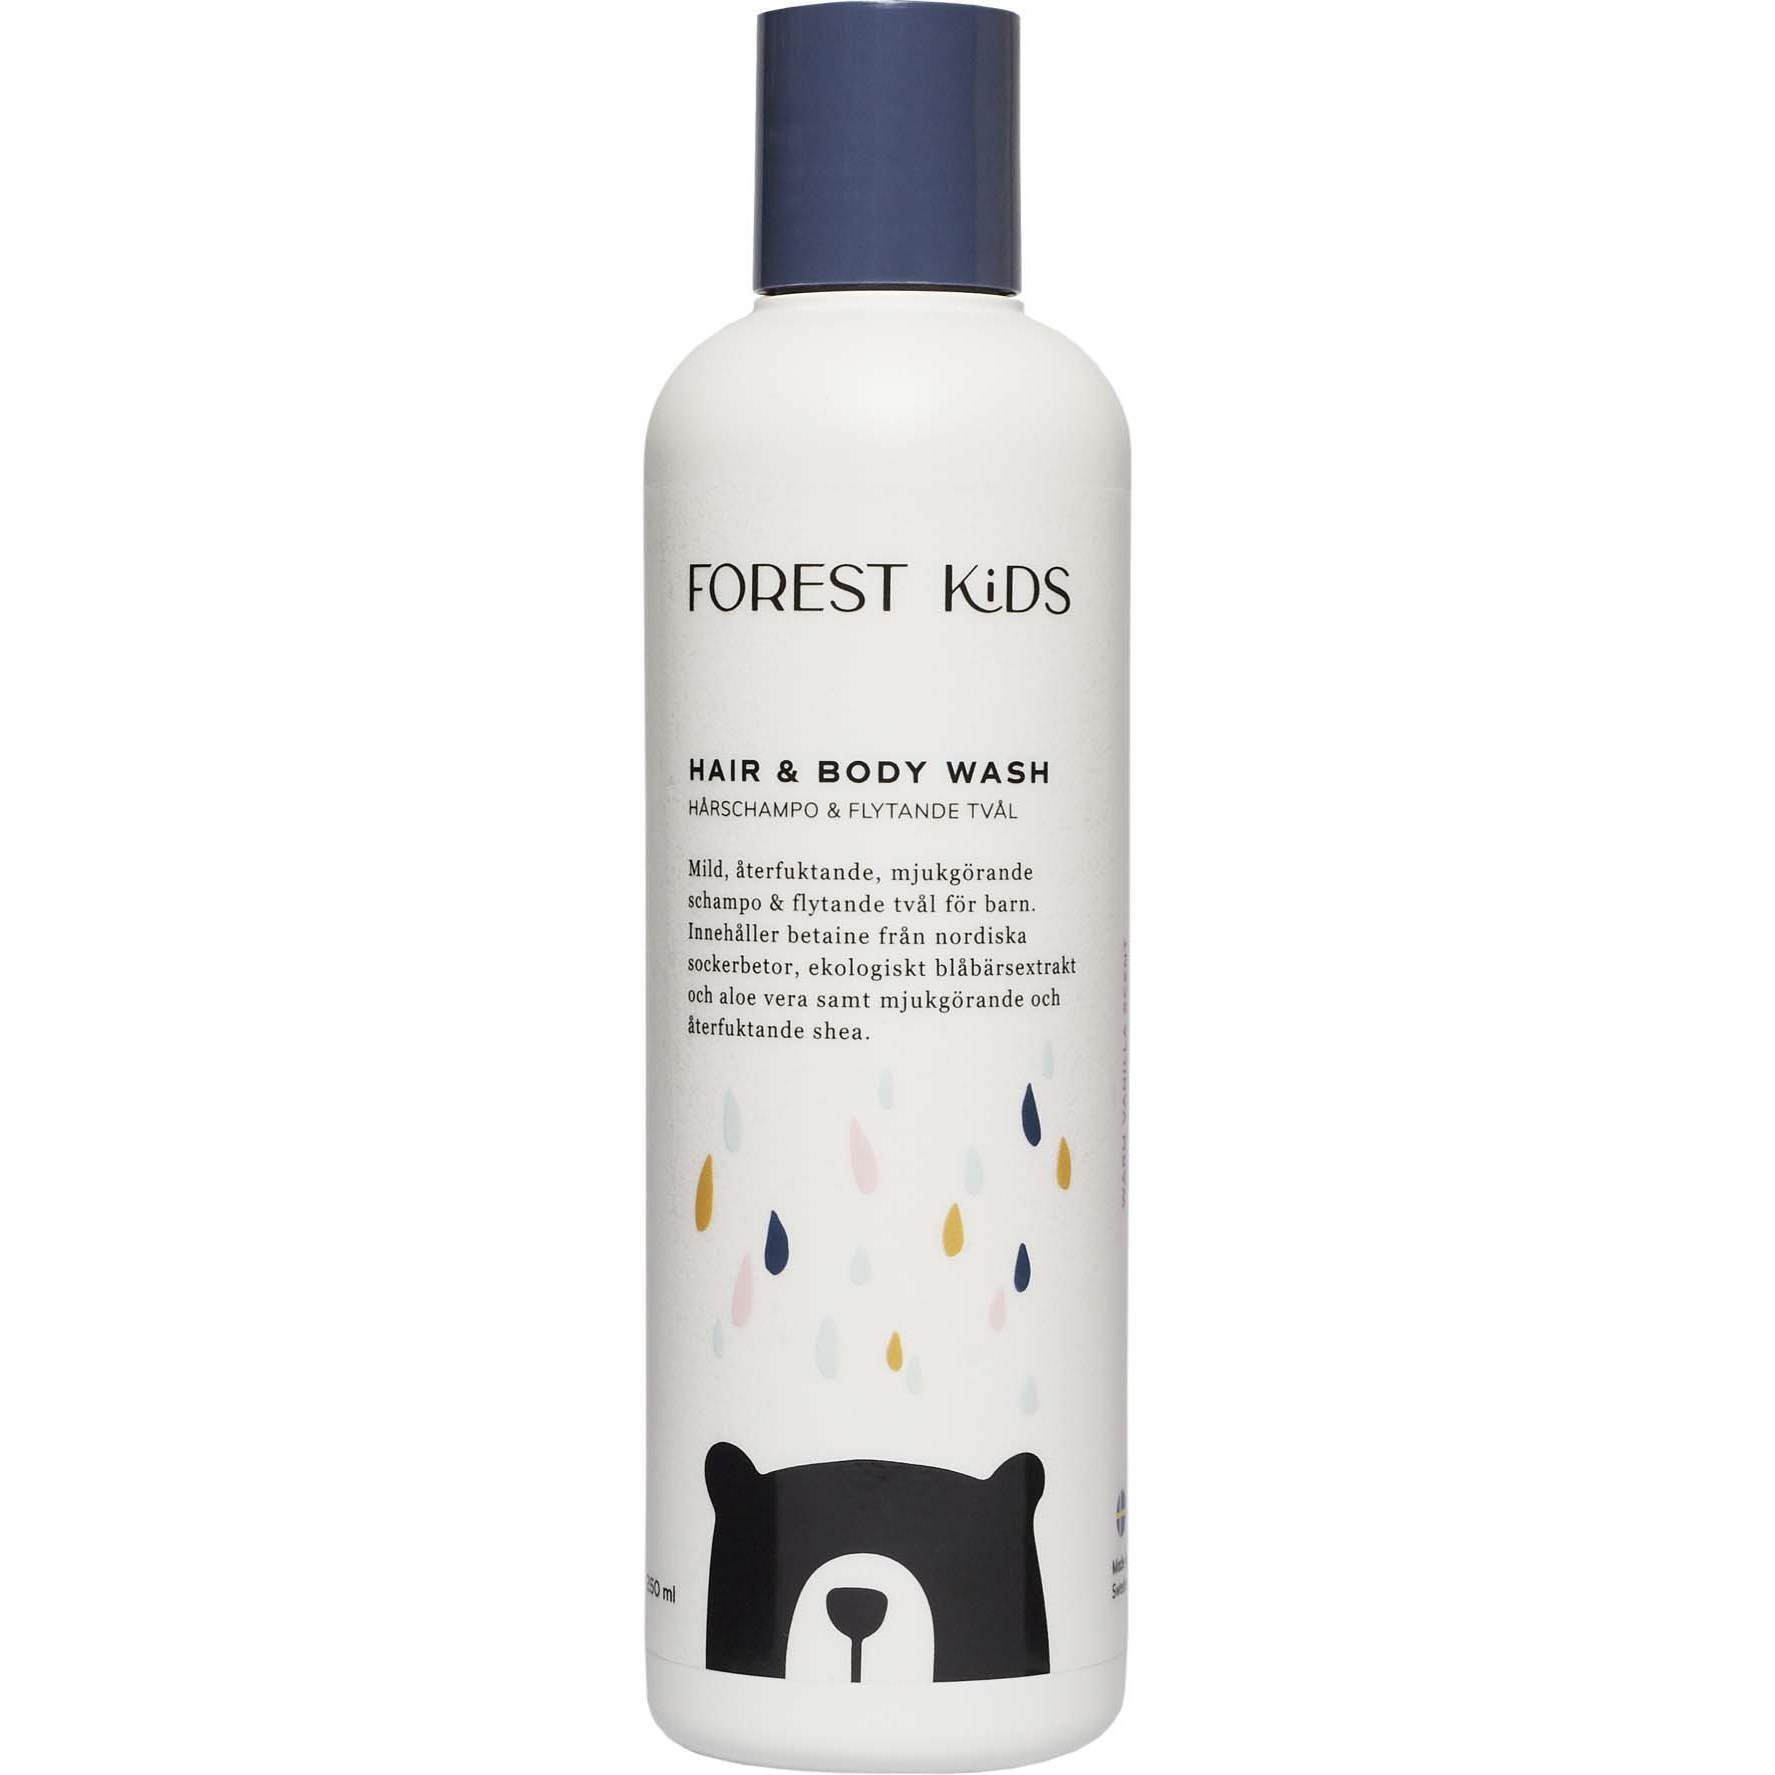 Forest Kids Hair & Body Wash 250 ml